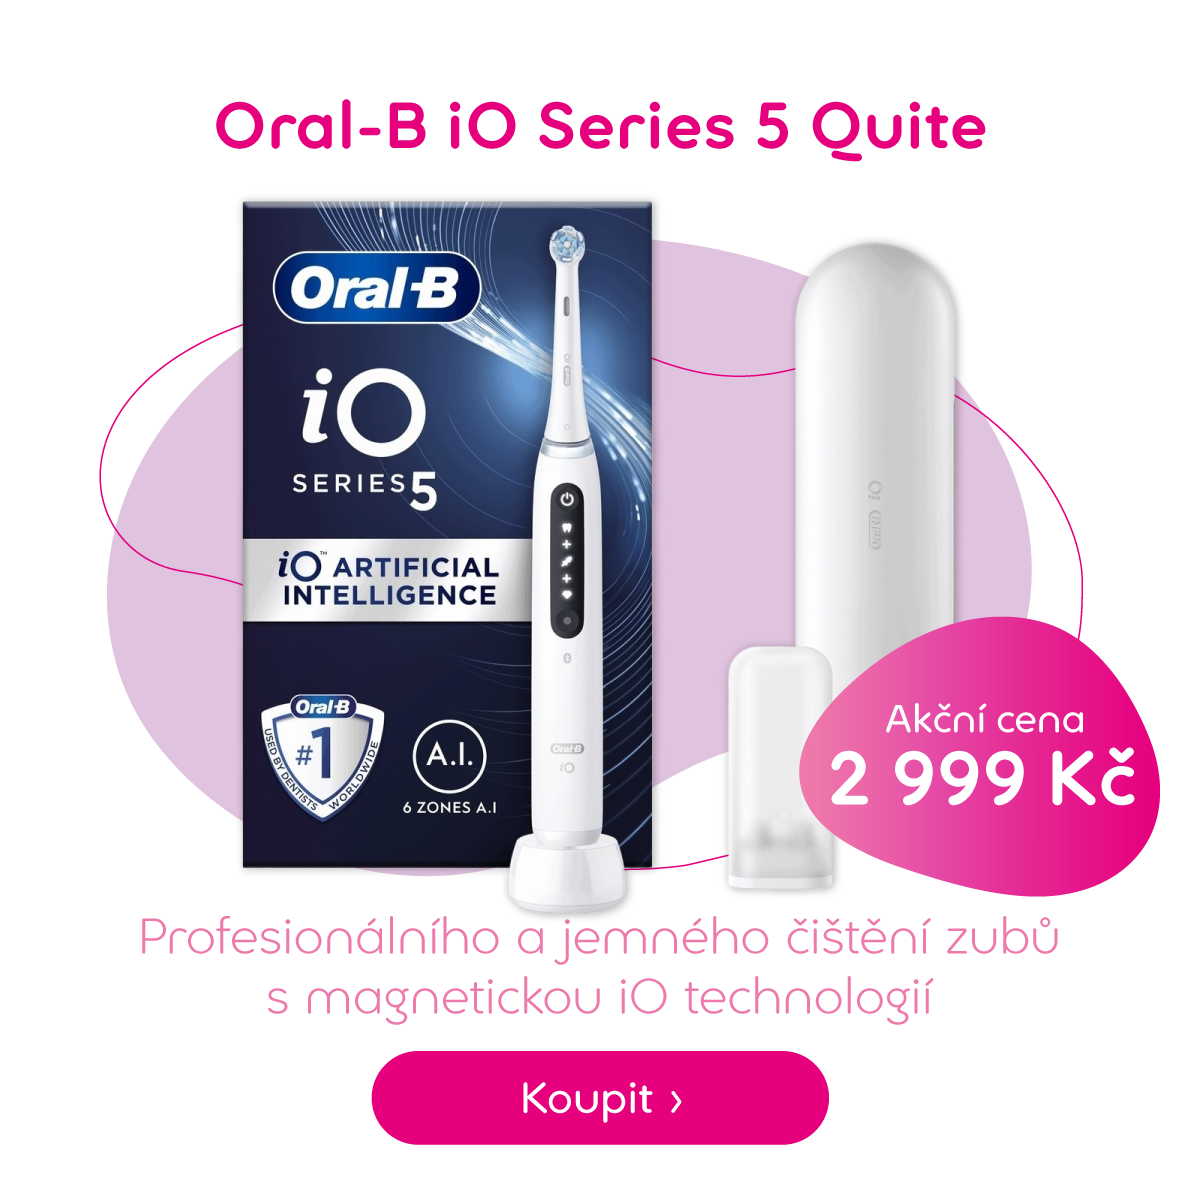 Oral-B iO Series 5 Quite